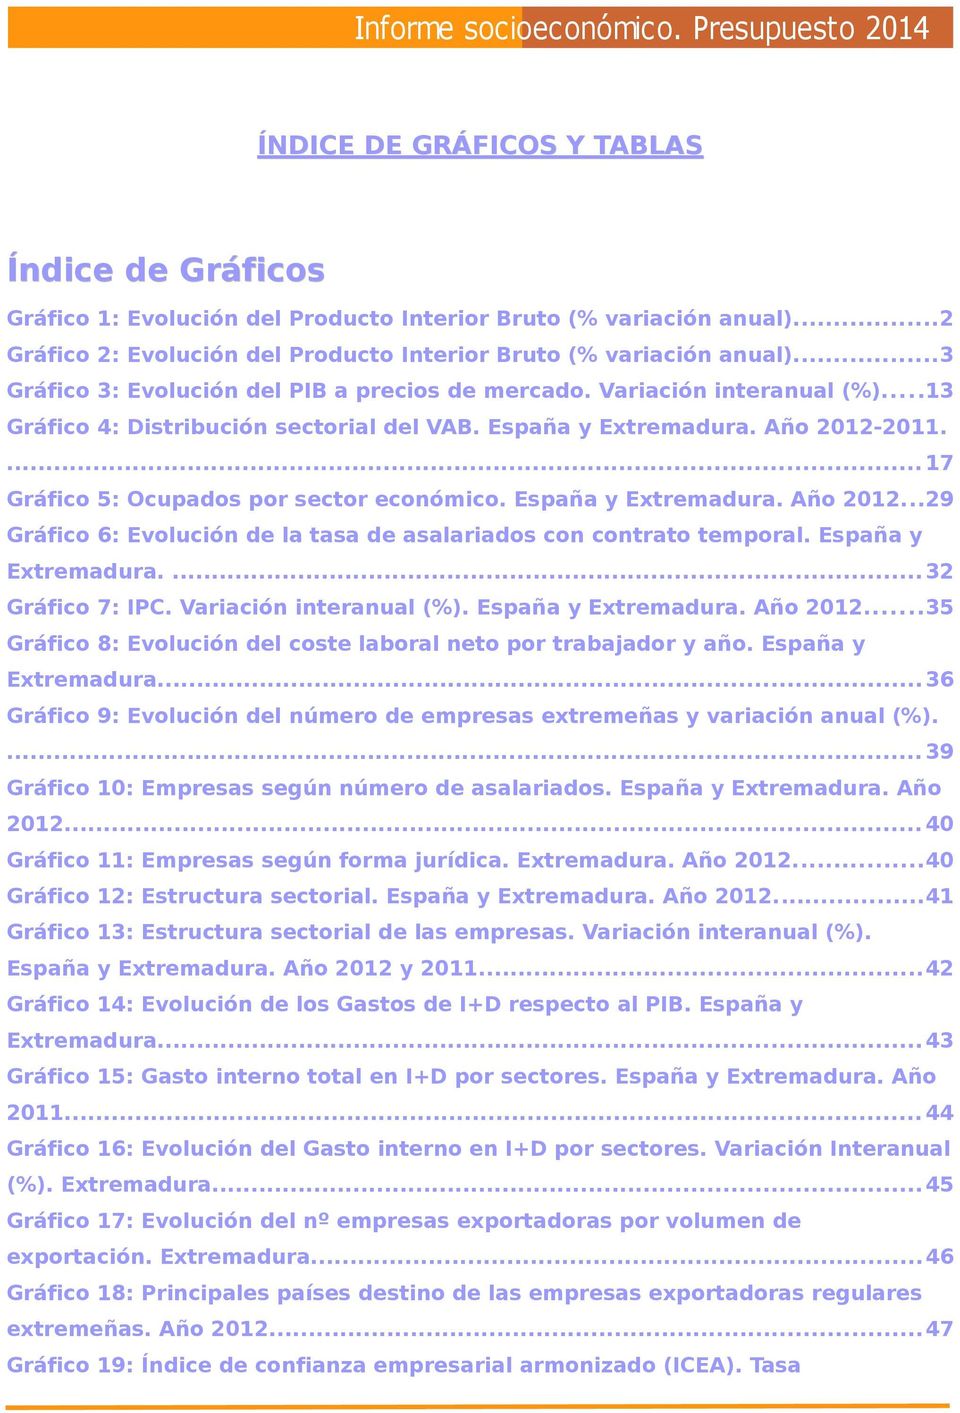 ... 17 Gráfico 5: Ocupados por sector económico. España y Extremadura. Año 2012...29 Gráfico 6: Evolución de la tasa de asalariados con contrato temporal. España y Extremadura....32 Gráfico 7: IPC.